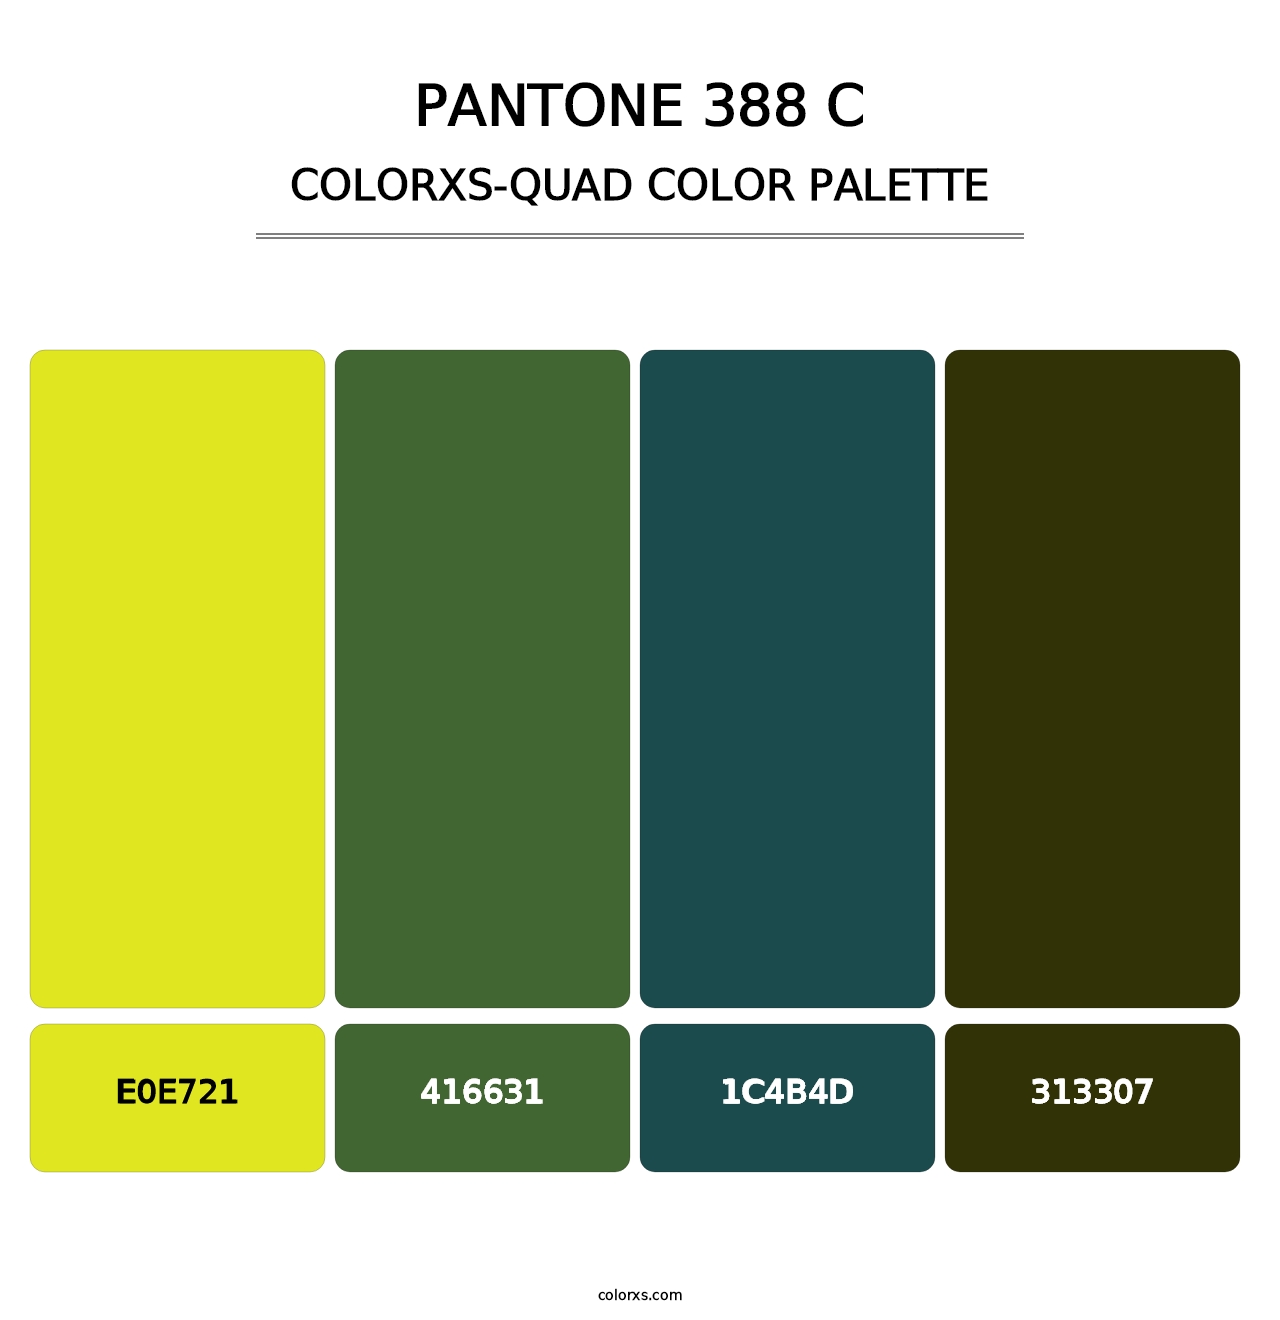 PANTONE 388 C - Colorxs Quad Palette